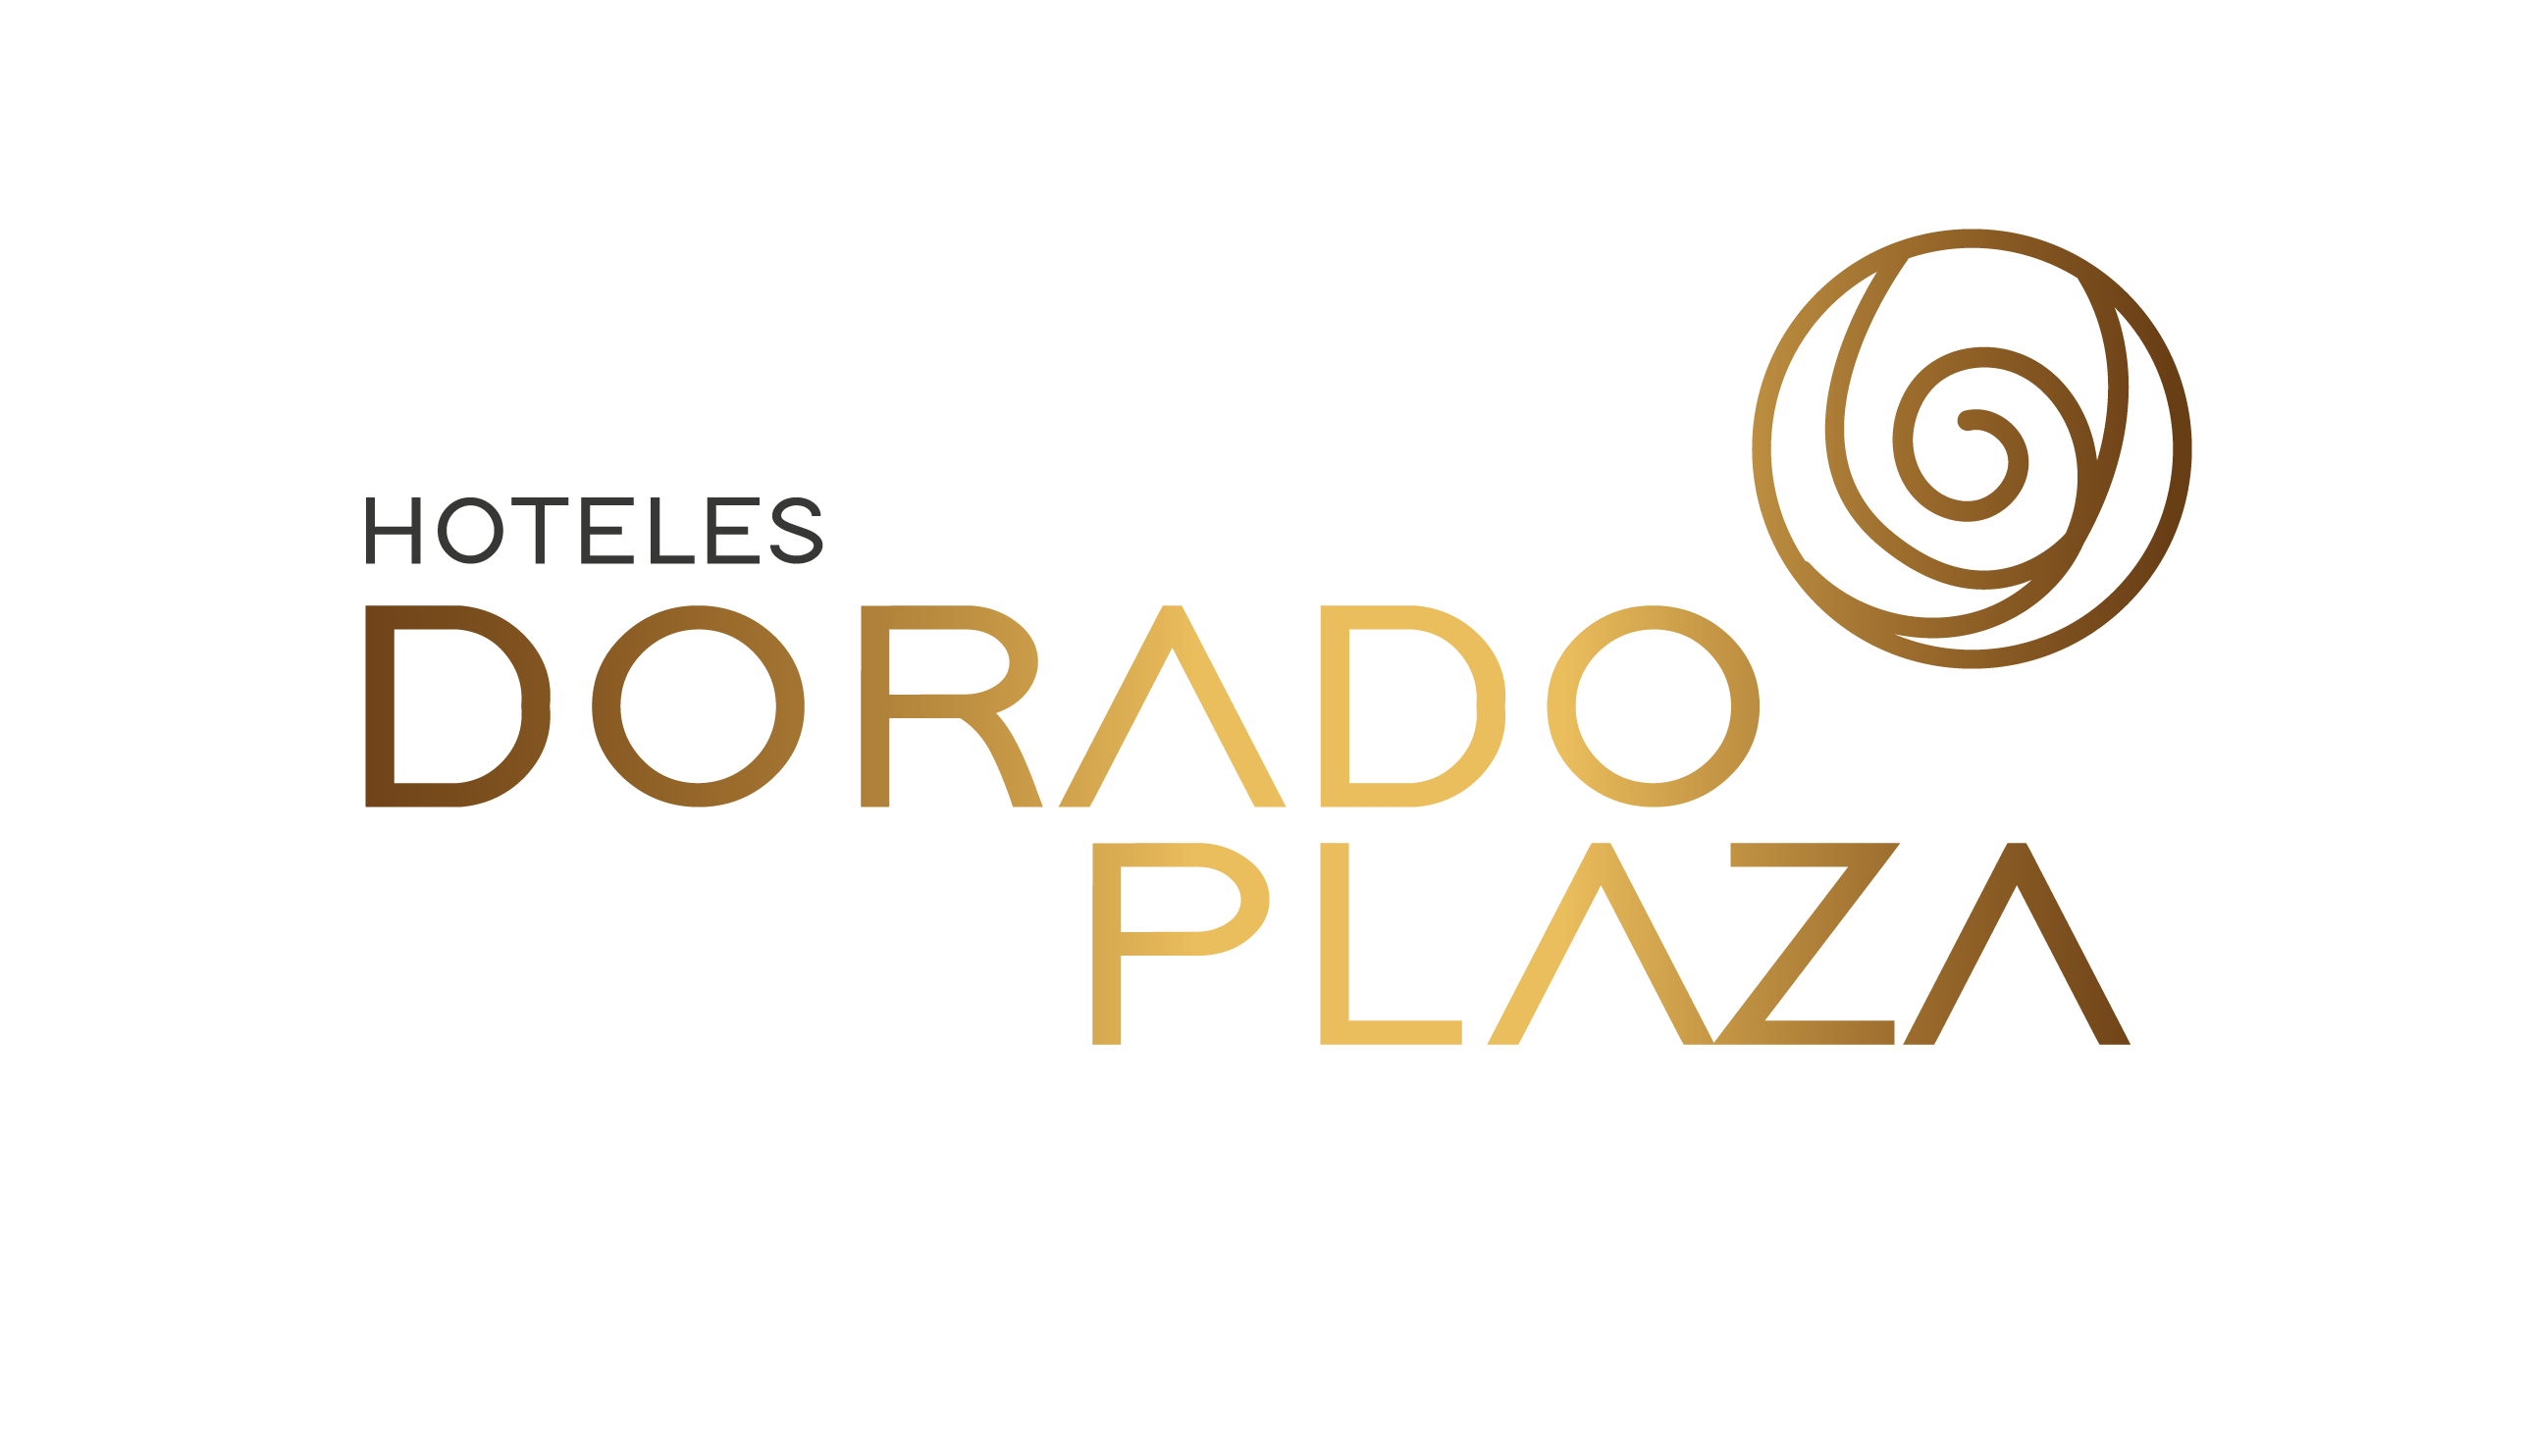 HOTELES DORADO PLAZA